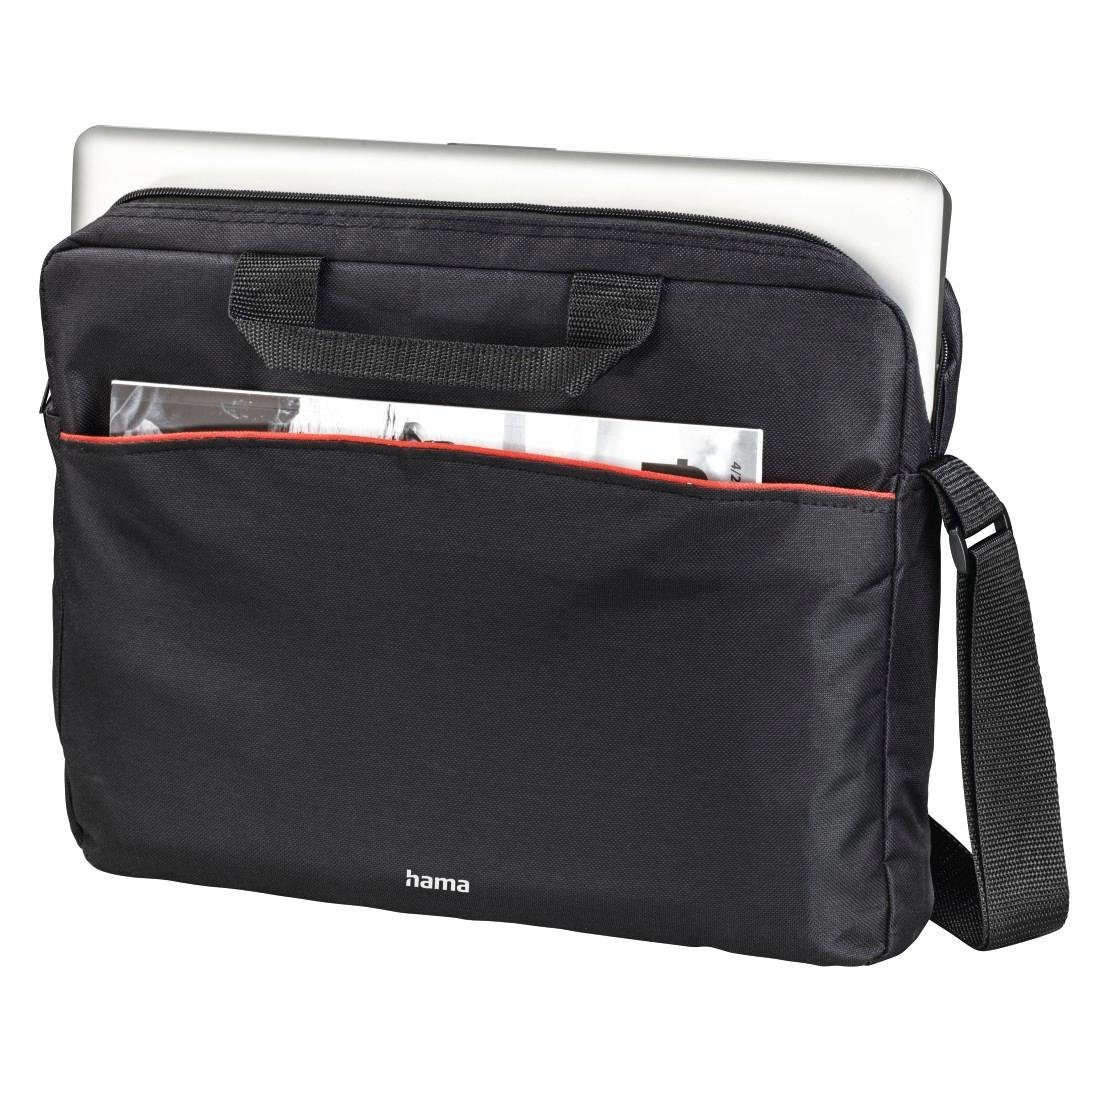 Hama Laptoptasche Tasche bis schwarz Laptop cm (15,6), 40